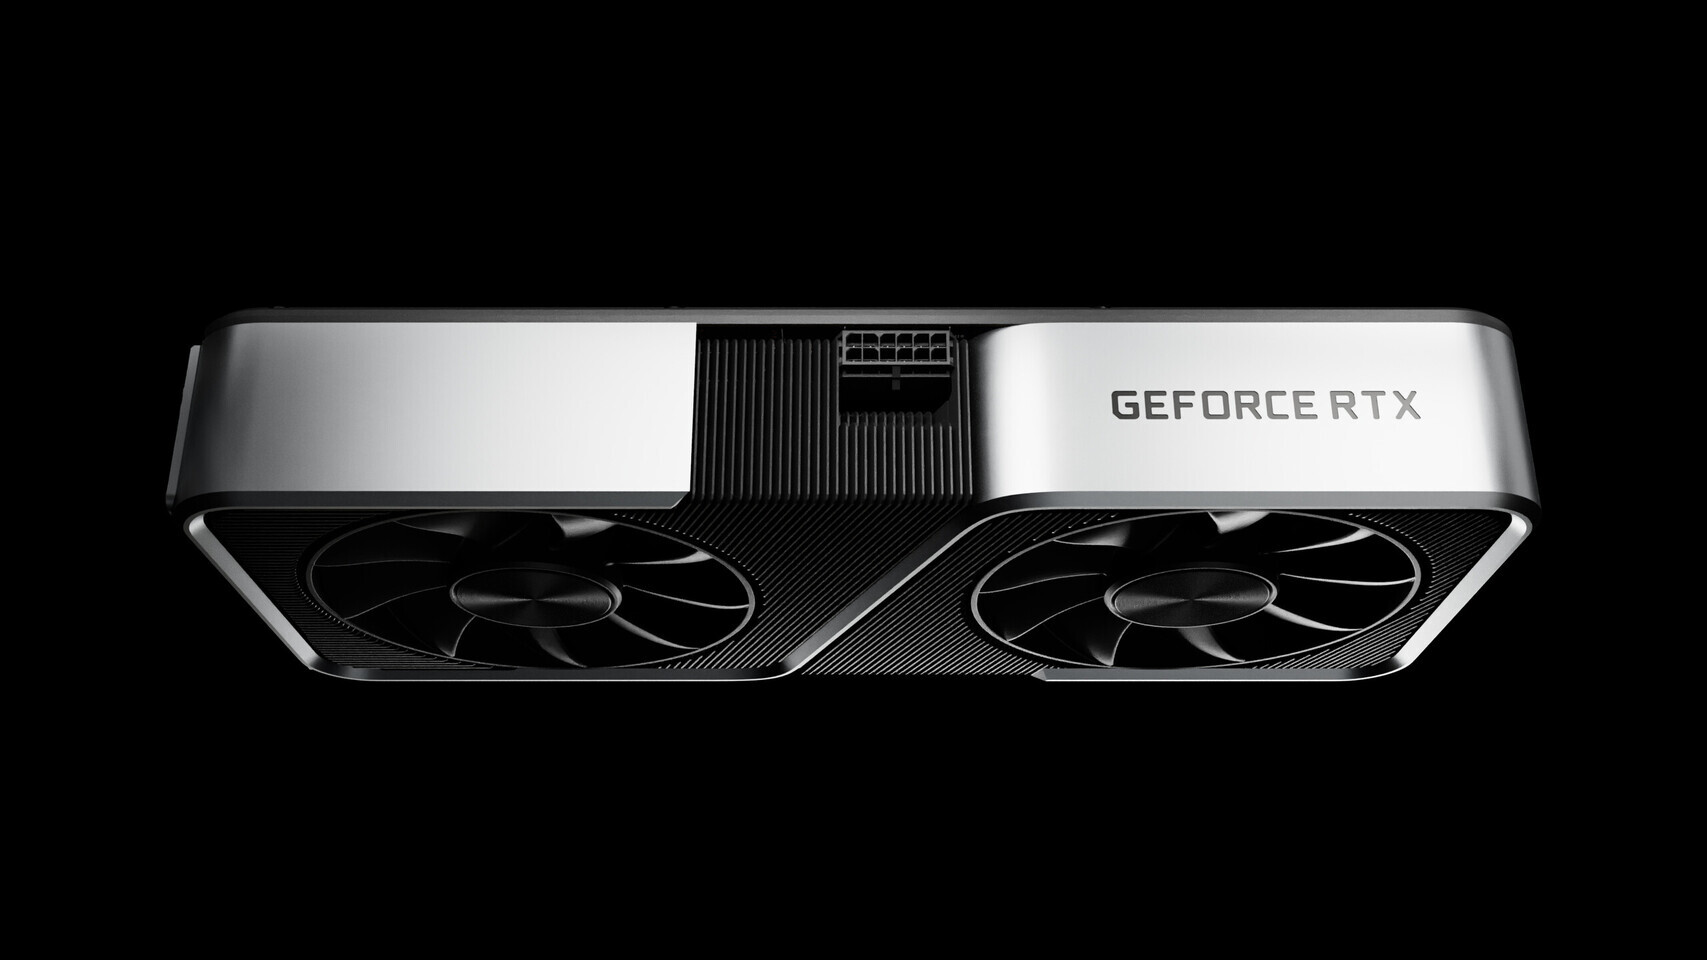 Σε δύο εκδόσεις με 4GB και 8GB μνήμης θα διατεθεί ενδεχομένως η Nvidia GeForce RTX 3050